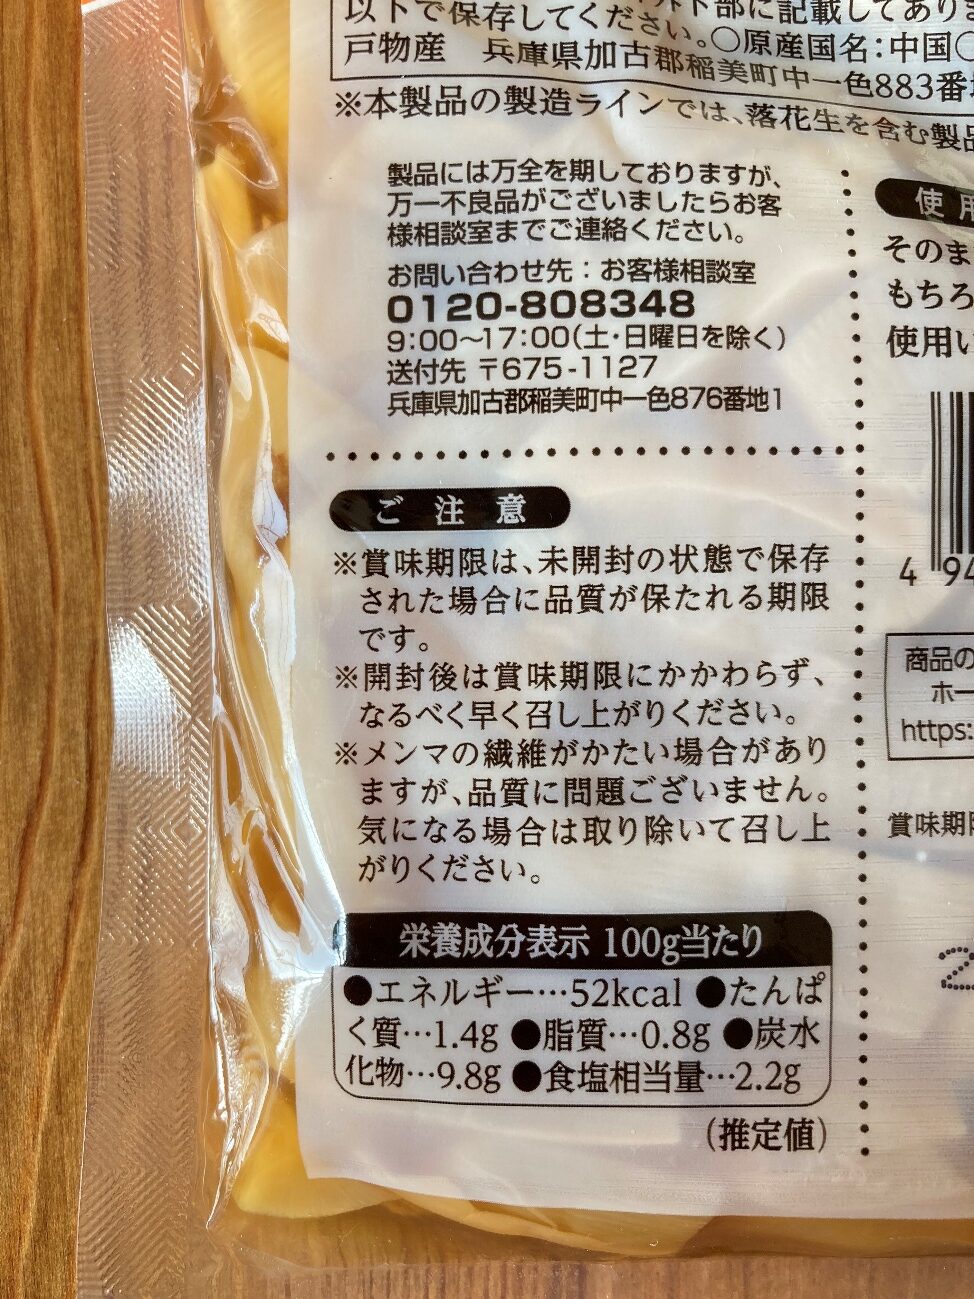 業務スーパーの味付けメンマの栄養成分表示